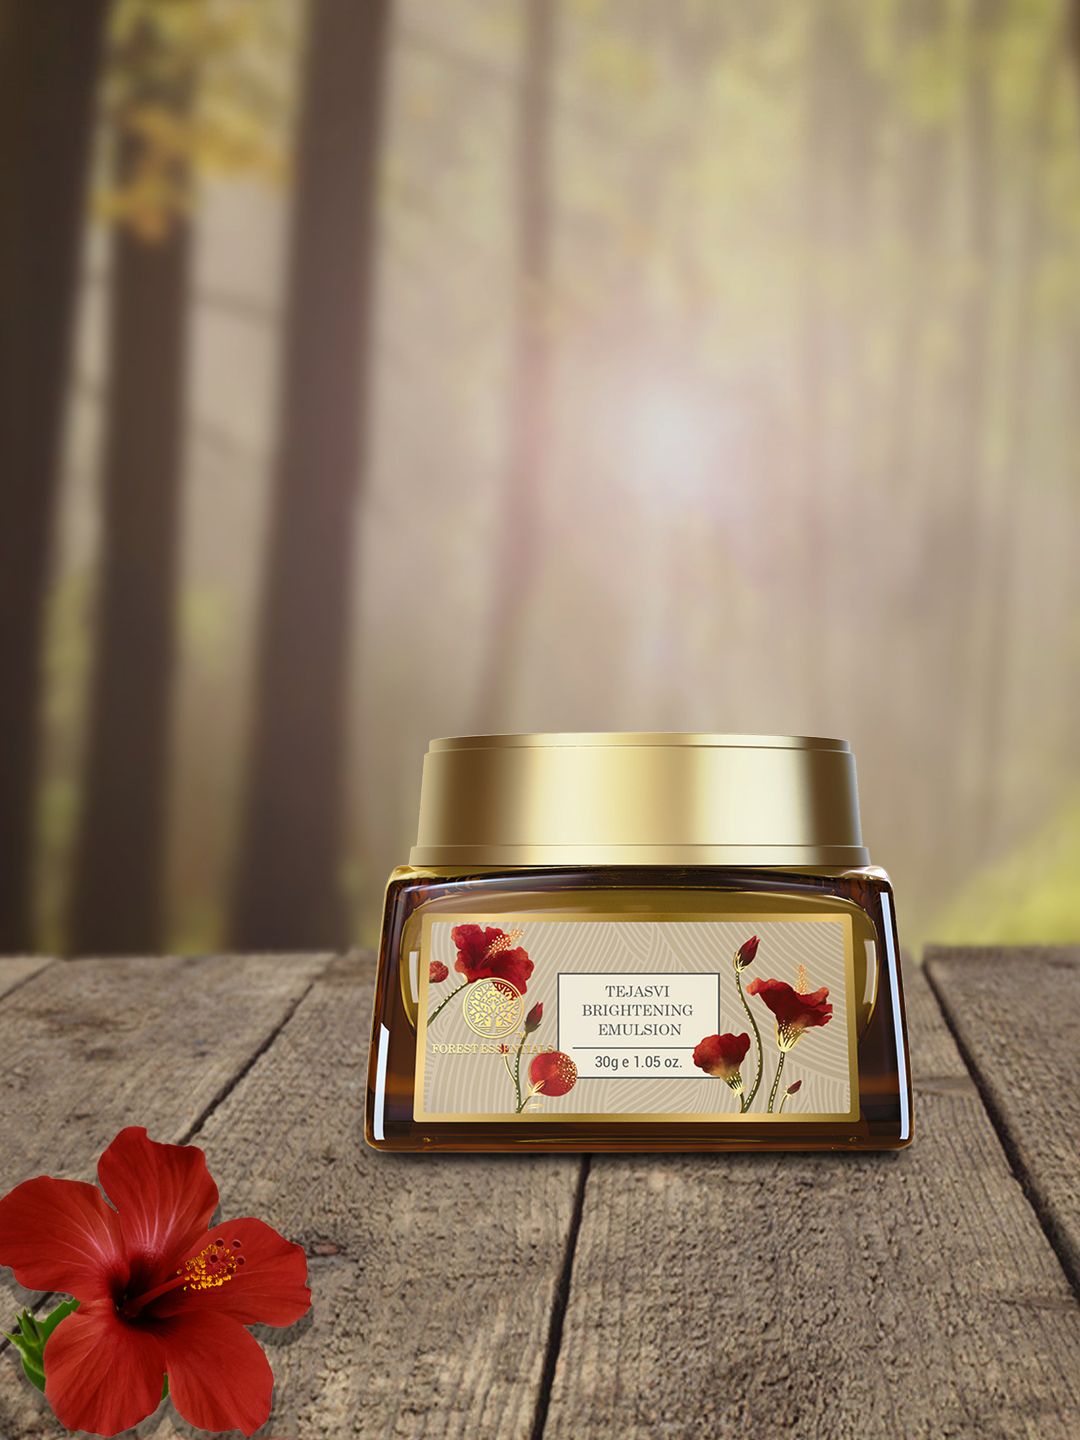 Forest Essentials Tejasvi Brightening Emulsion Anti-Aging Face Cream 30g Price in India